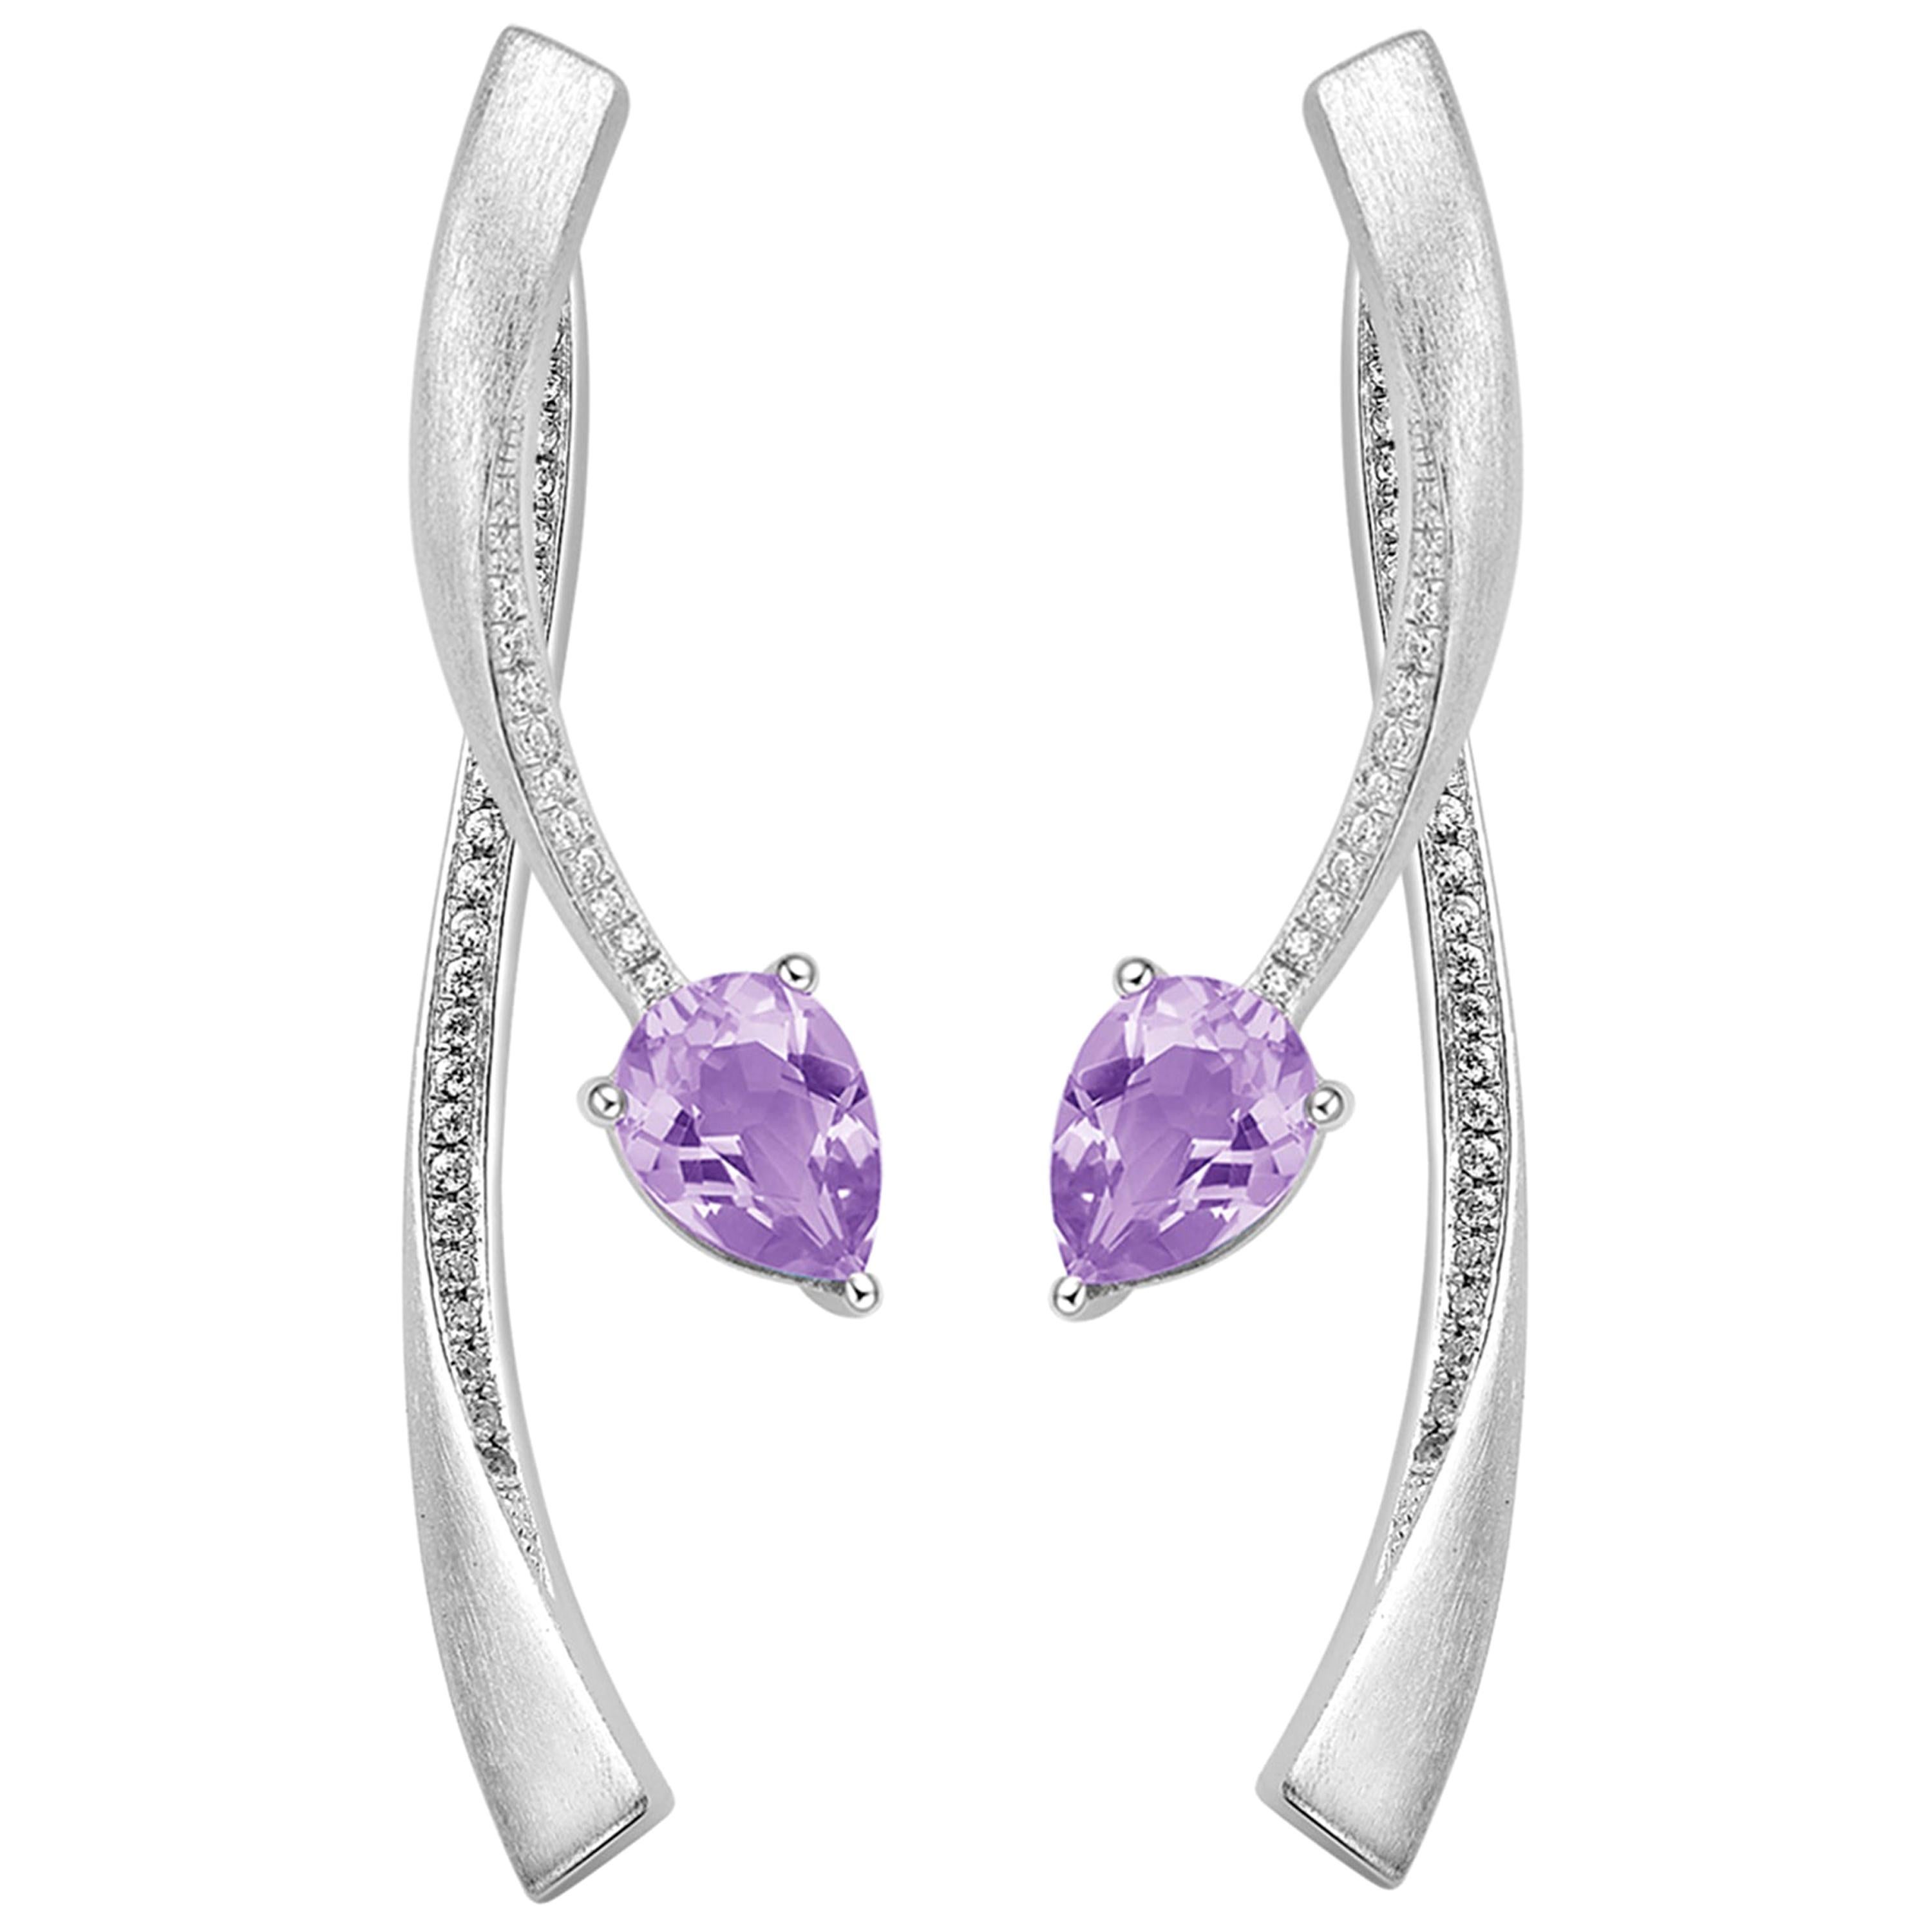 Fei Liu Purple Amtheyst Cubic Zirconia Sterling Silver Two-Piece Drop Earrings